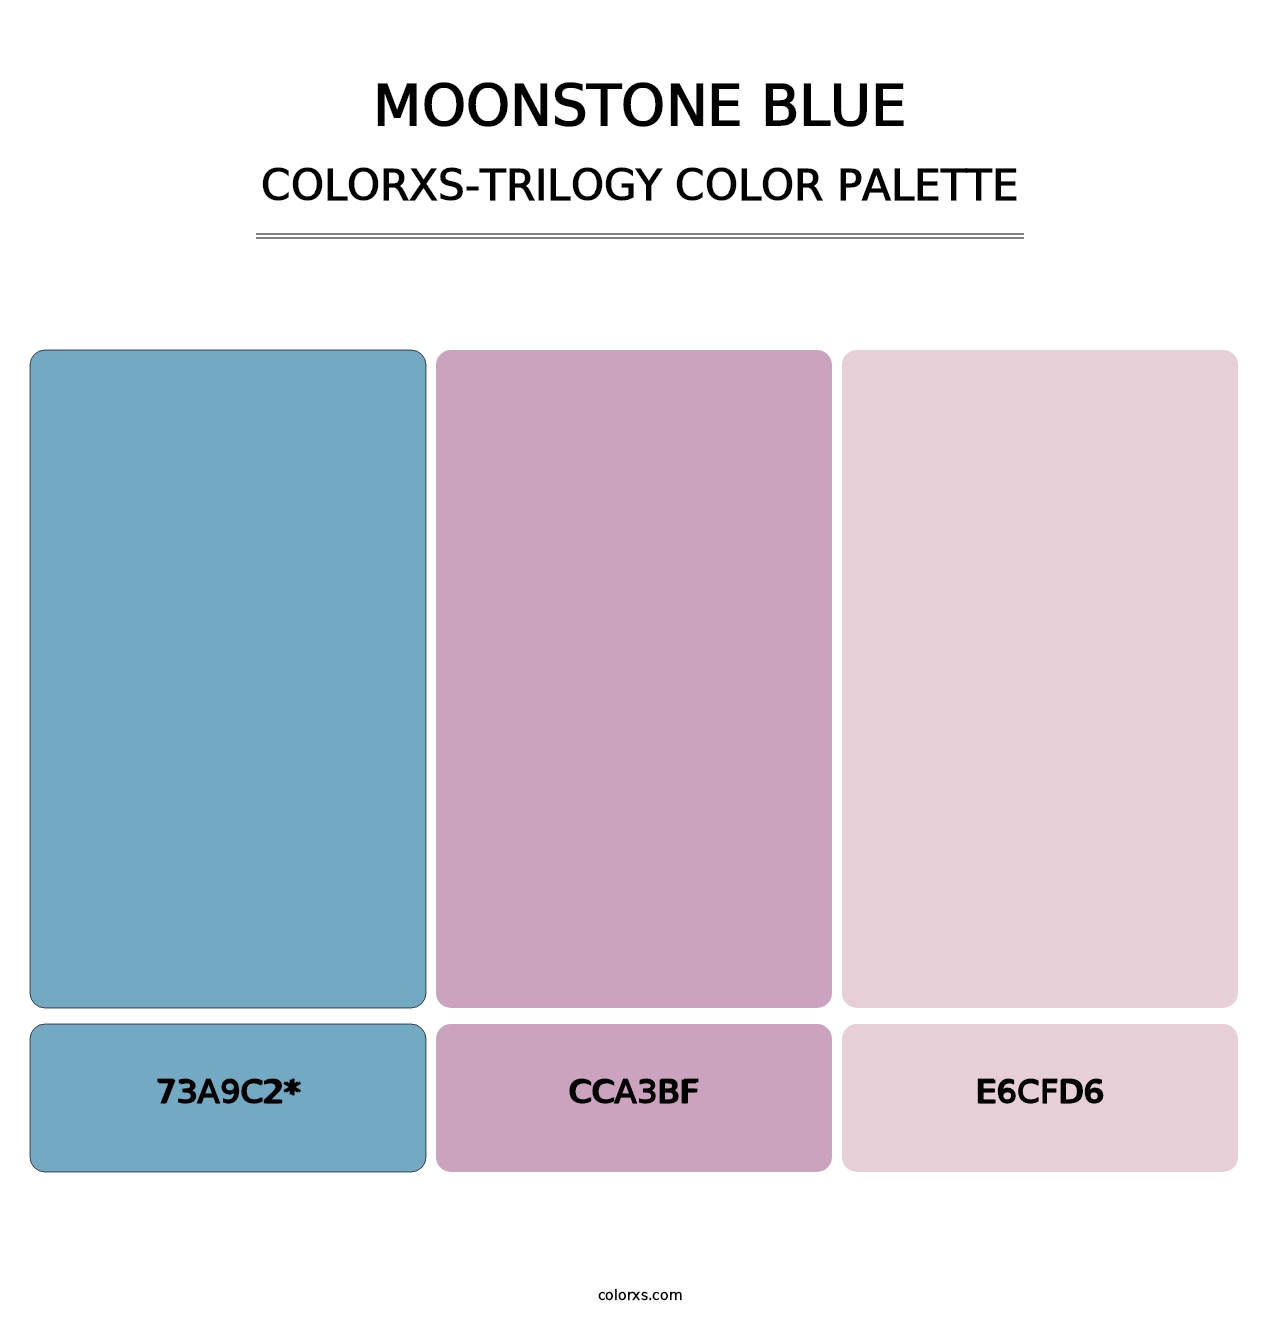 Moonstone Blue - Colorxs Trilogy Palette